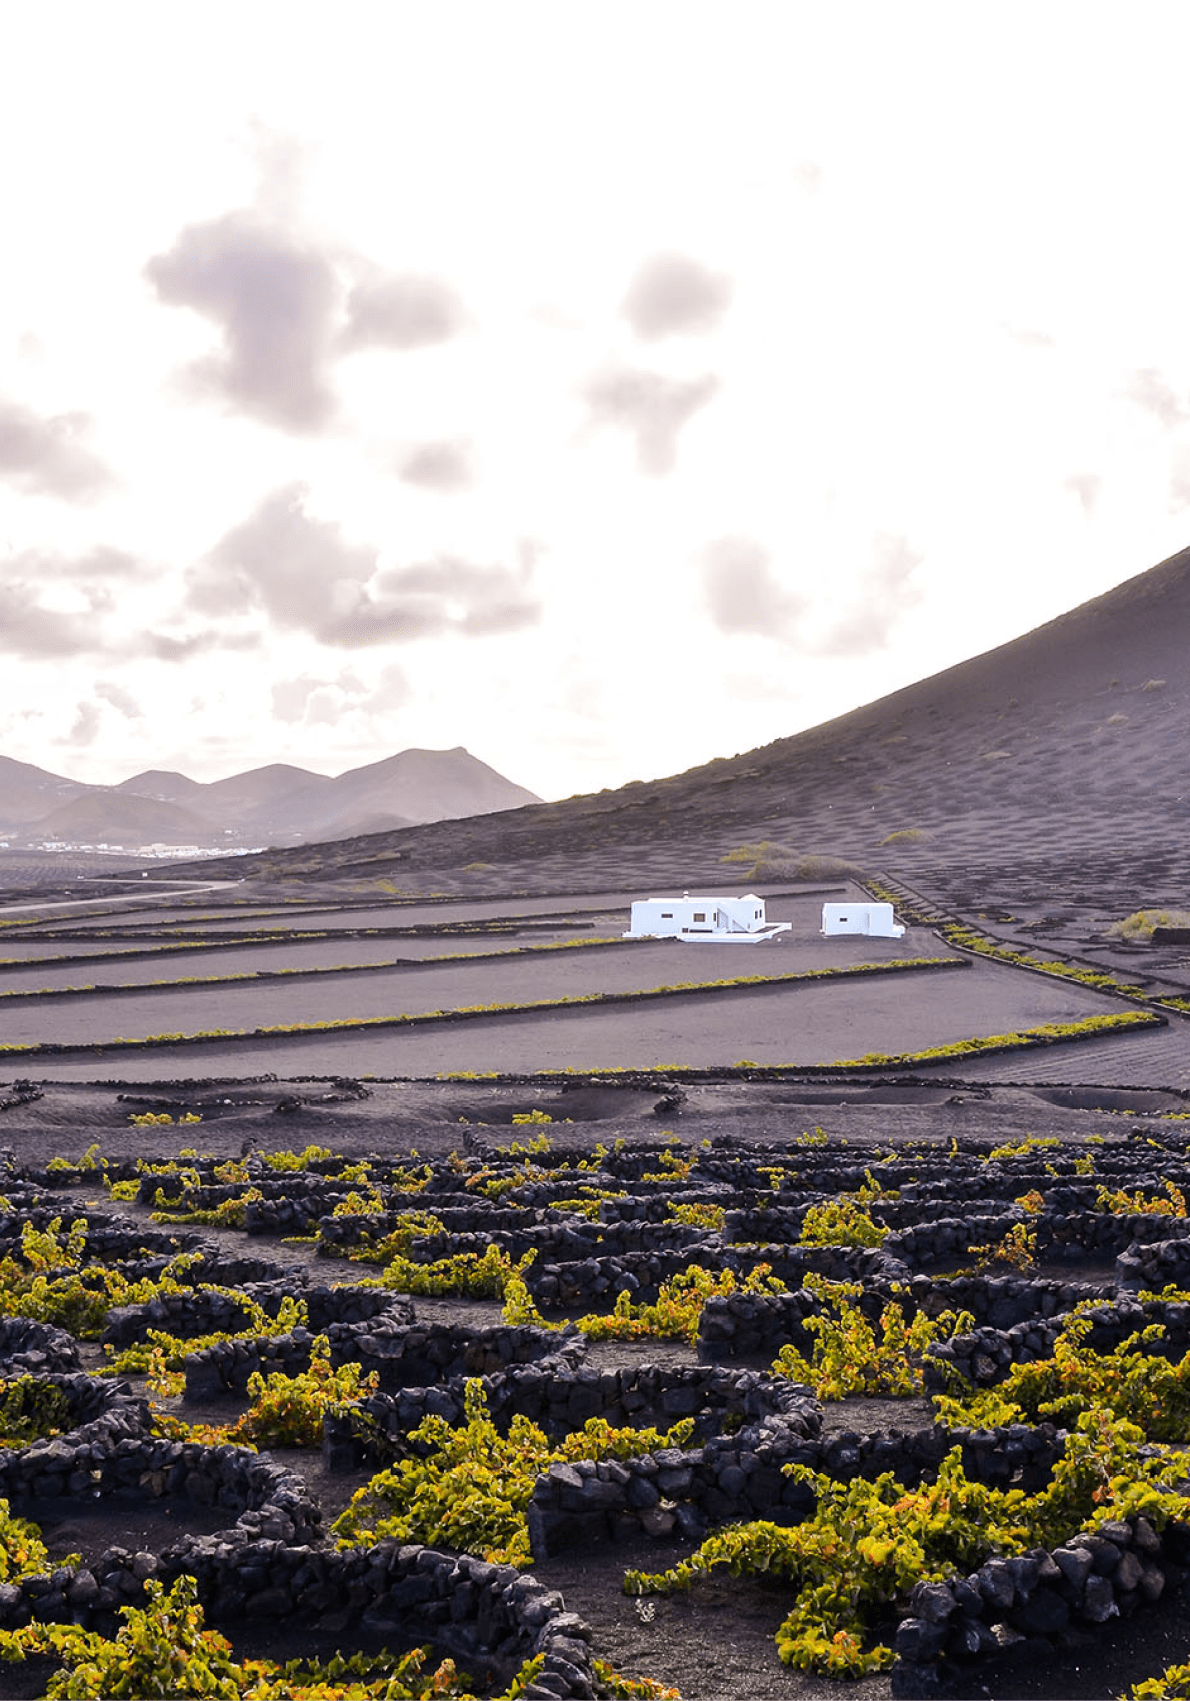 Vineyards in La Geria Lanzarote canary islands Spain